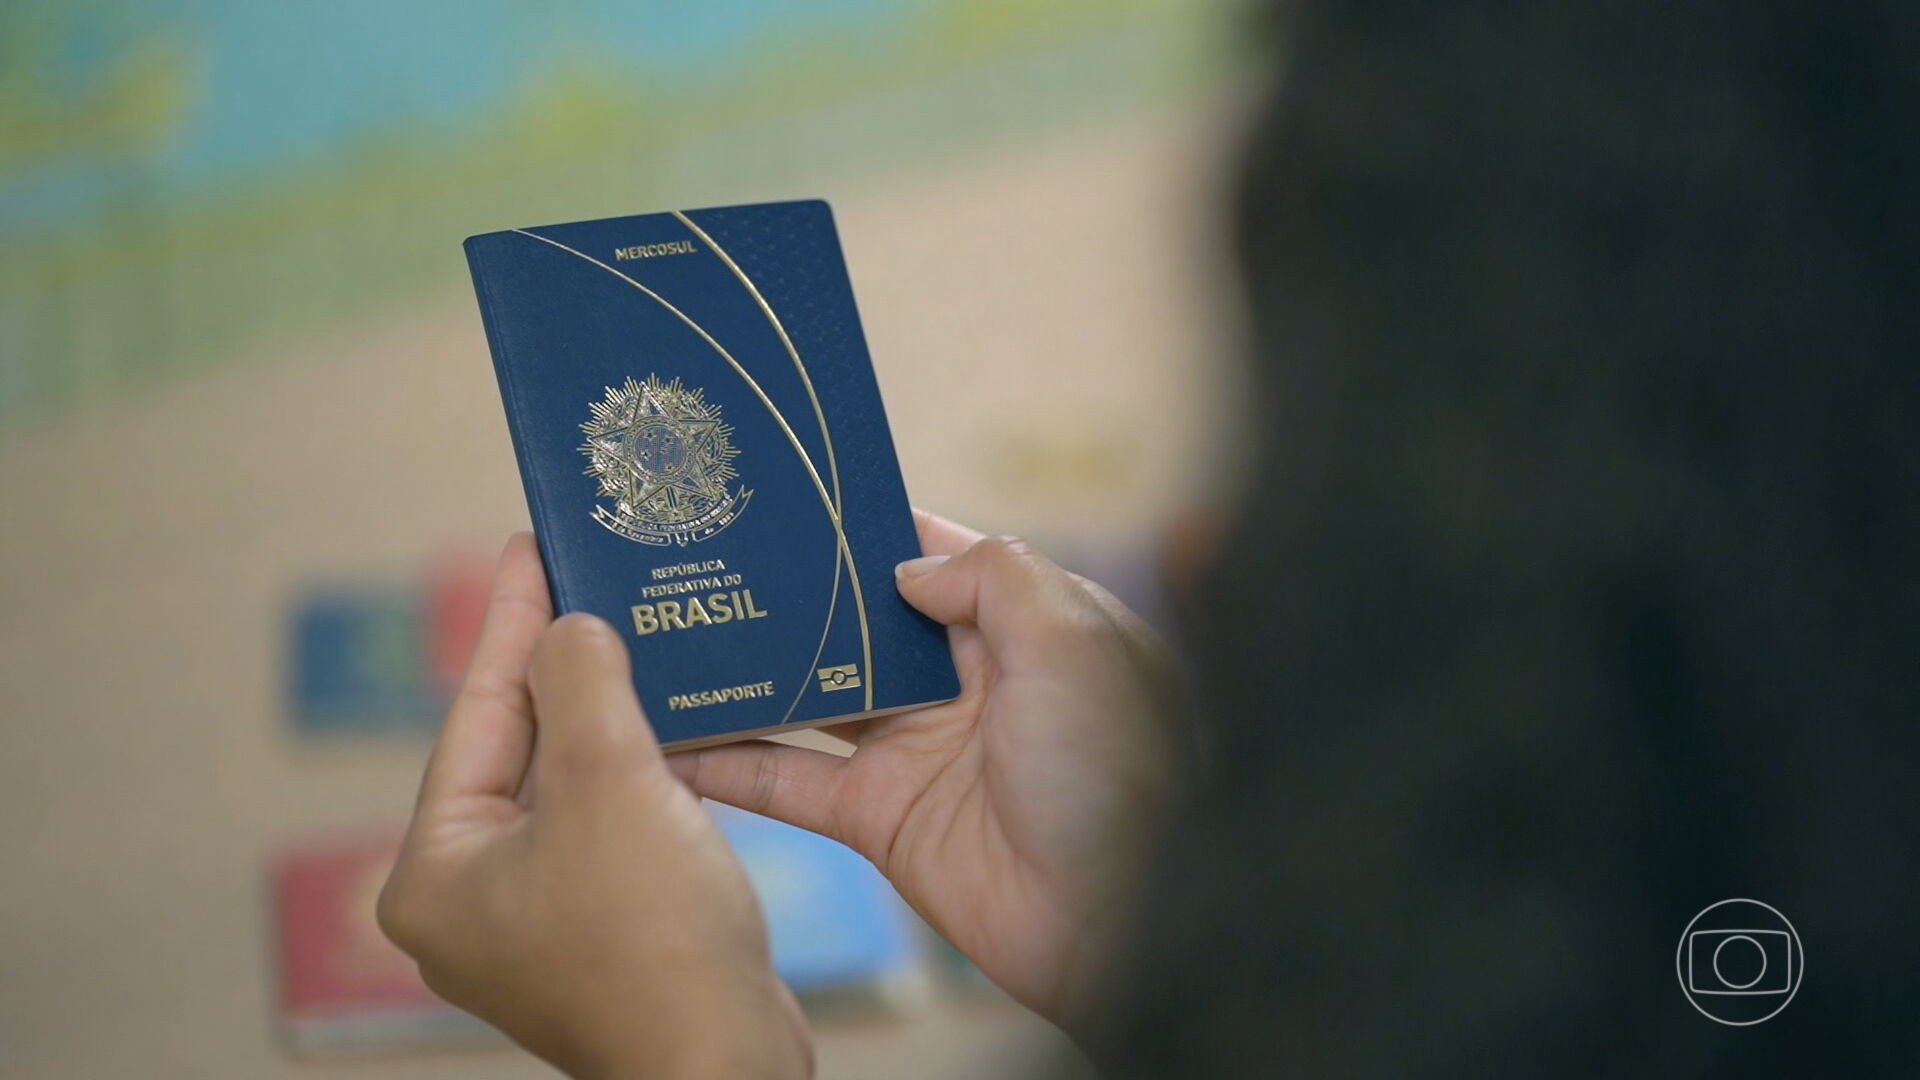 Emissão de passaporte online continua suspensa e sem previsão de normalização, diz Polícia Federal